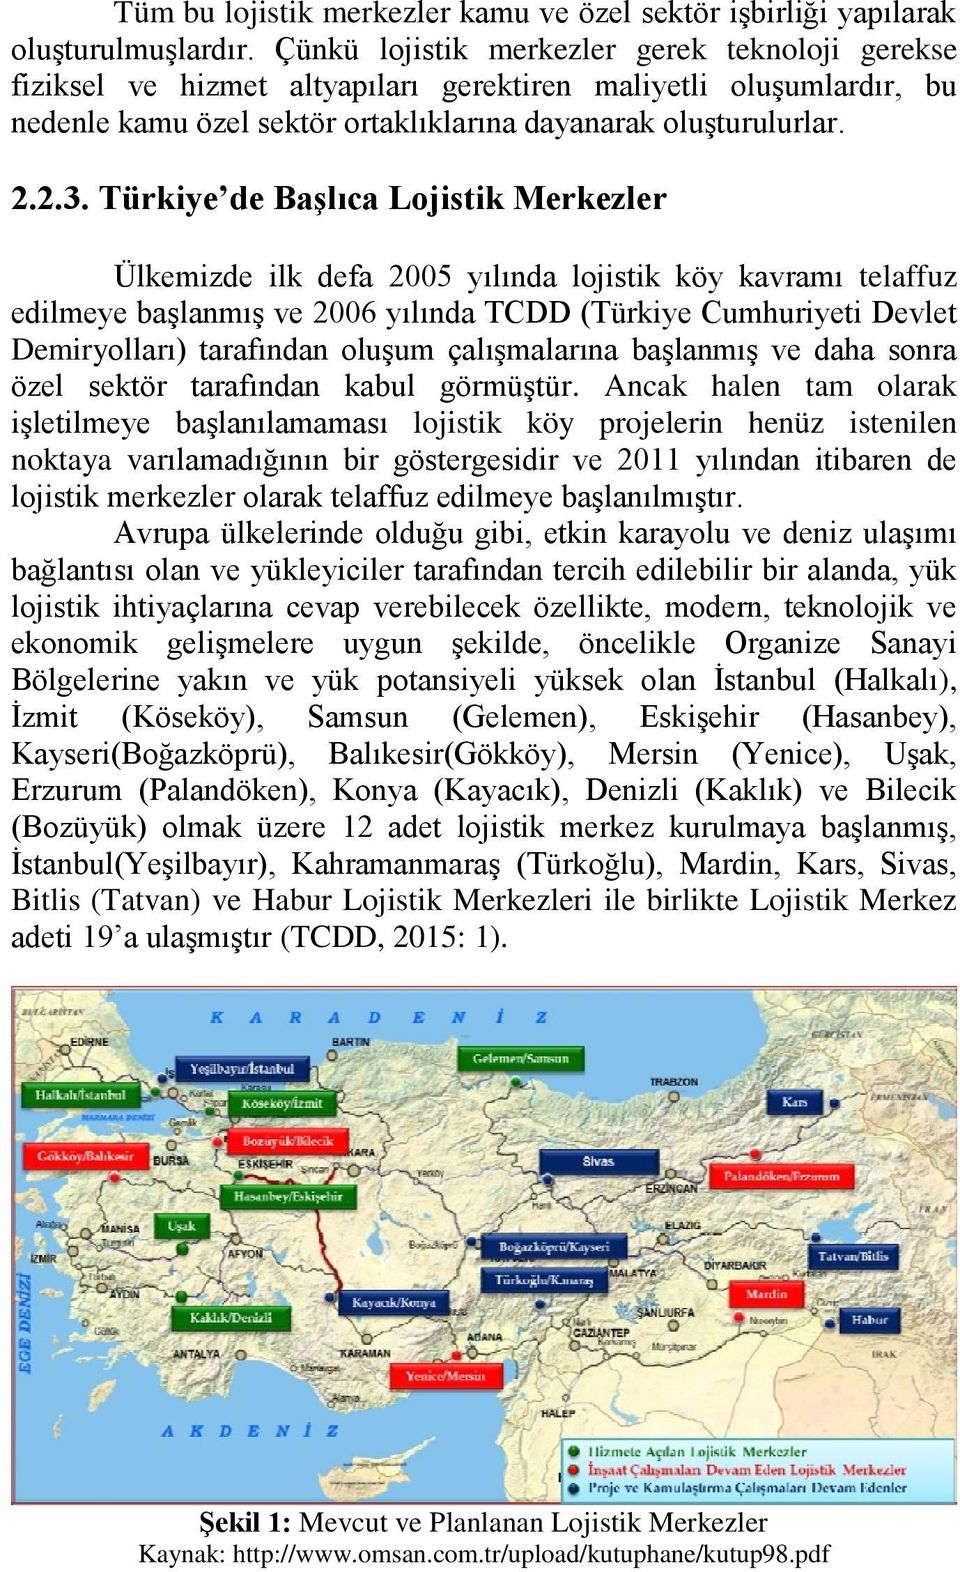 Türkiye de Başlıca Lojistik Merkezler Ülkemizde ilk defa 2005 yılında lojistik köy kavramı telaffuz edilmeye başlanmış ve 2006 yılında TCDD (Türkiye Cumhuriyeti Devlet Demiryolları) tarafından oluşum